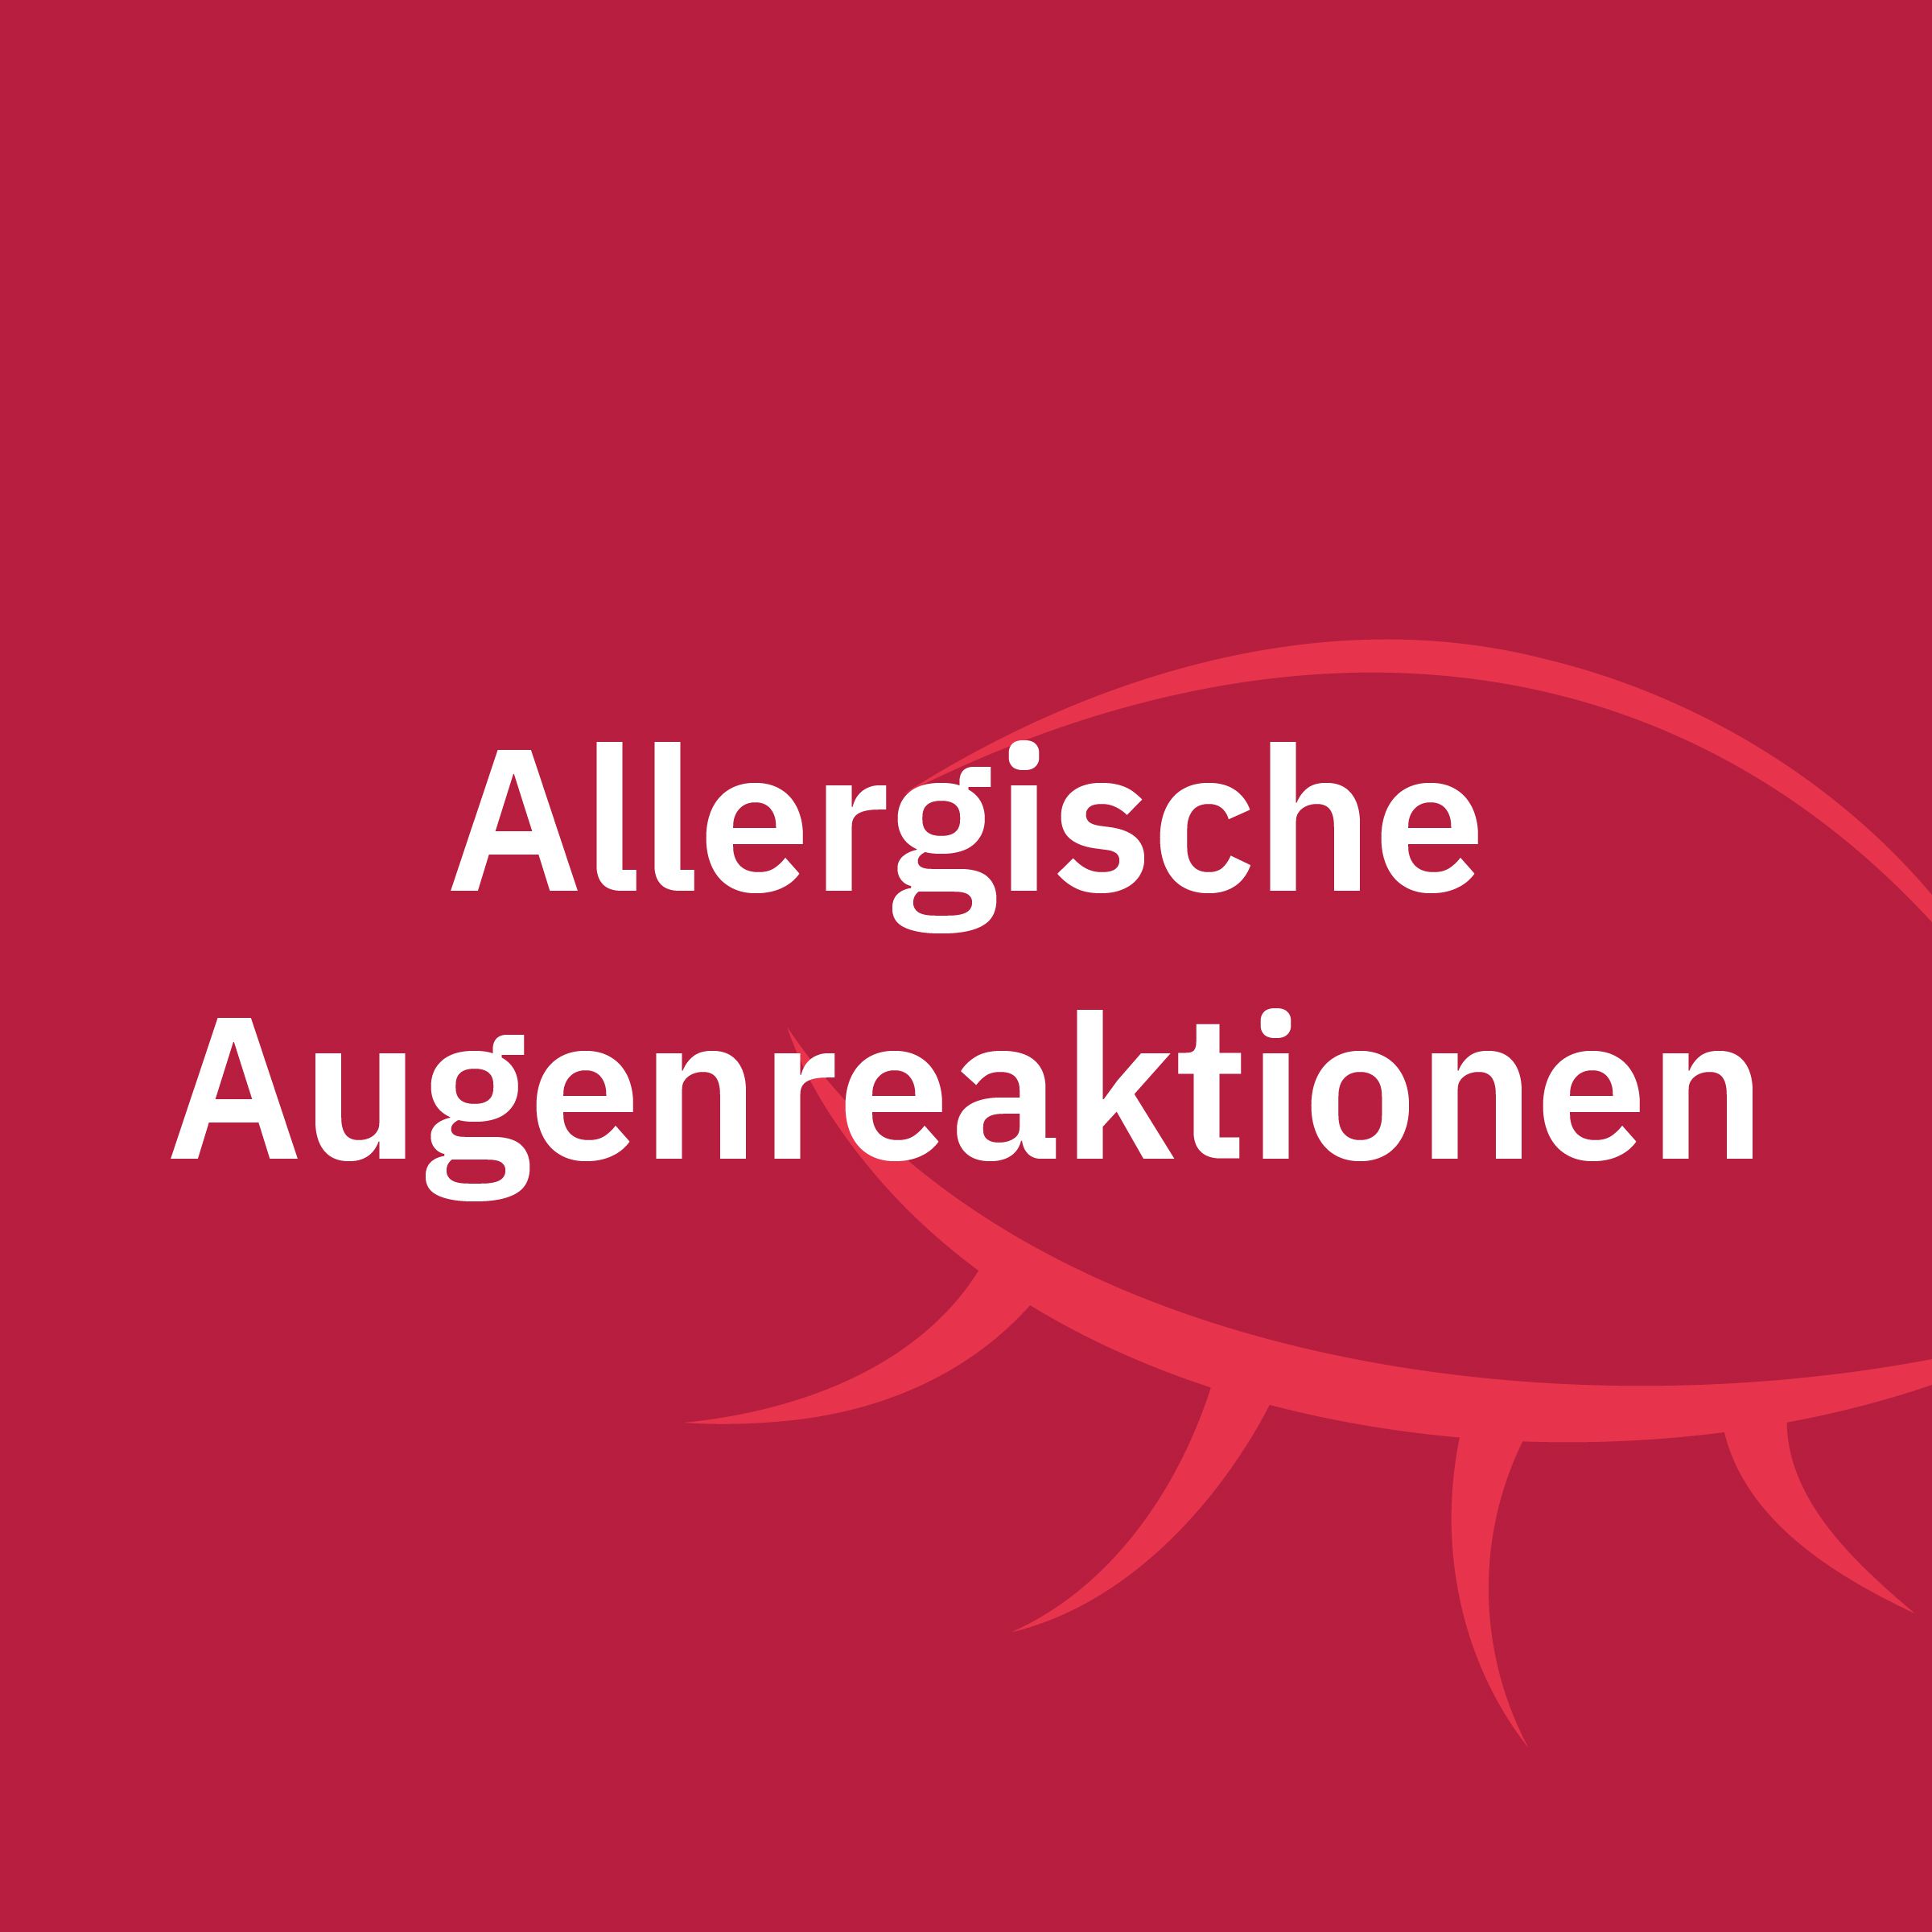 Allergische Augenreaktionen